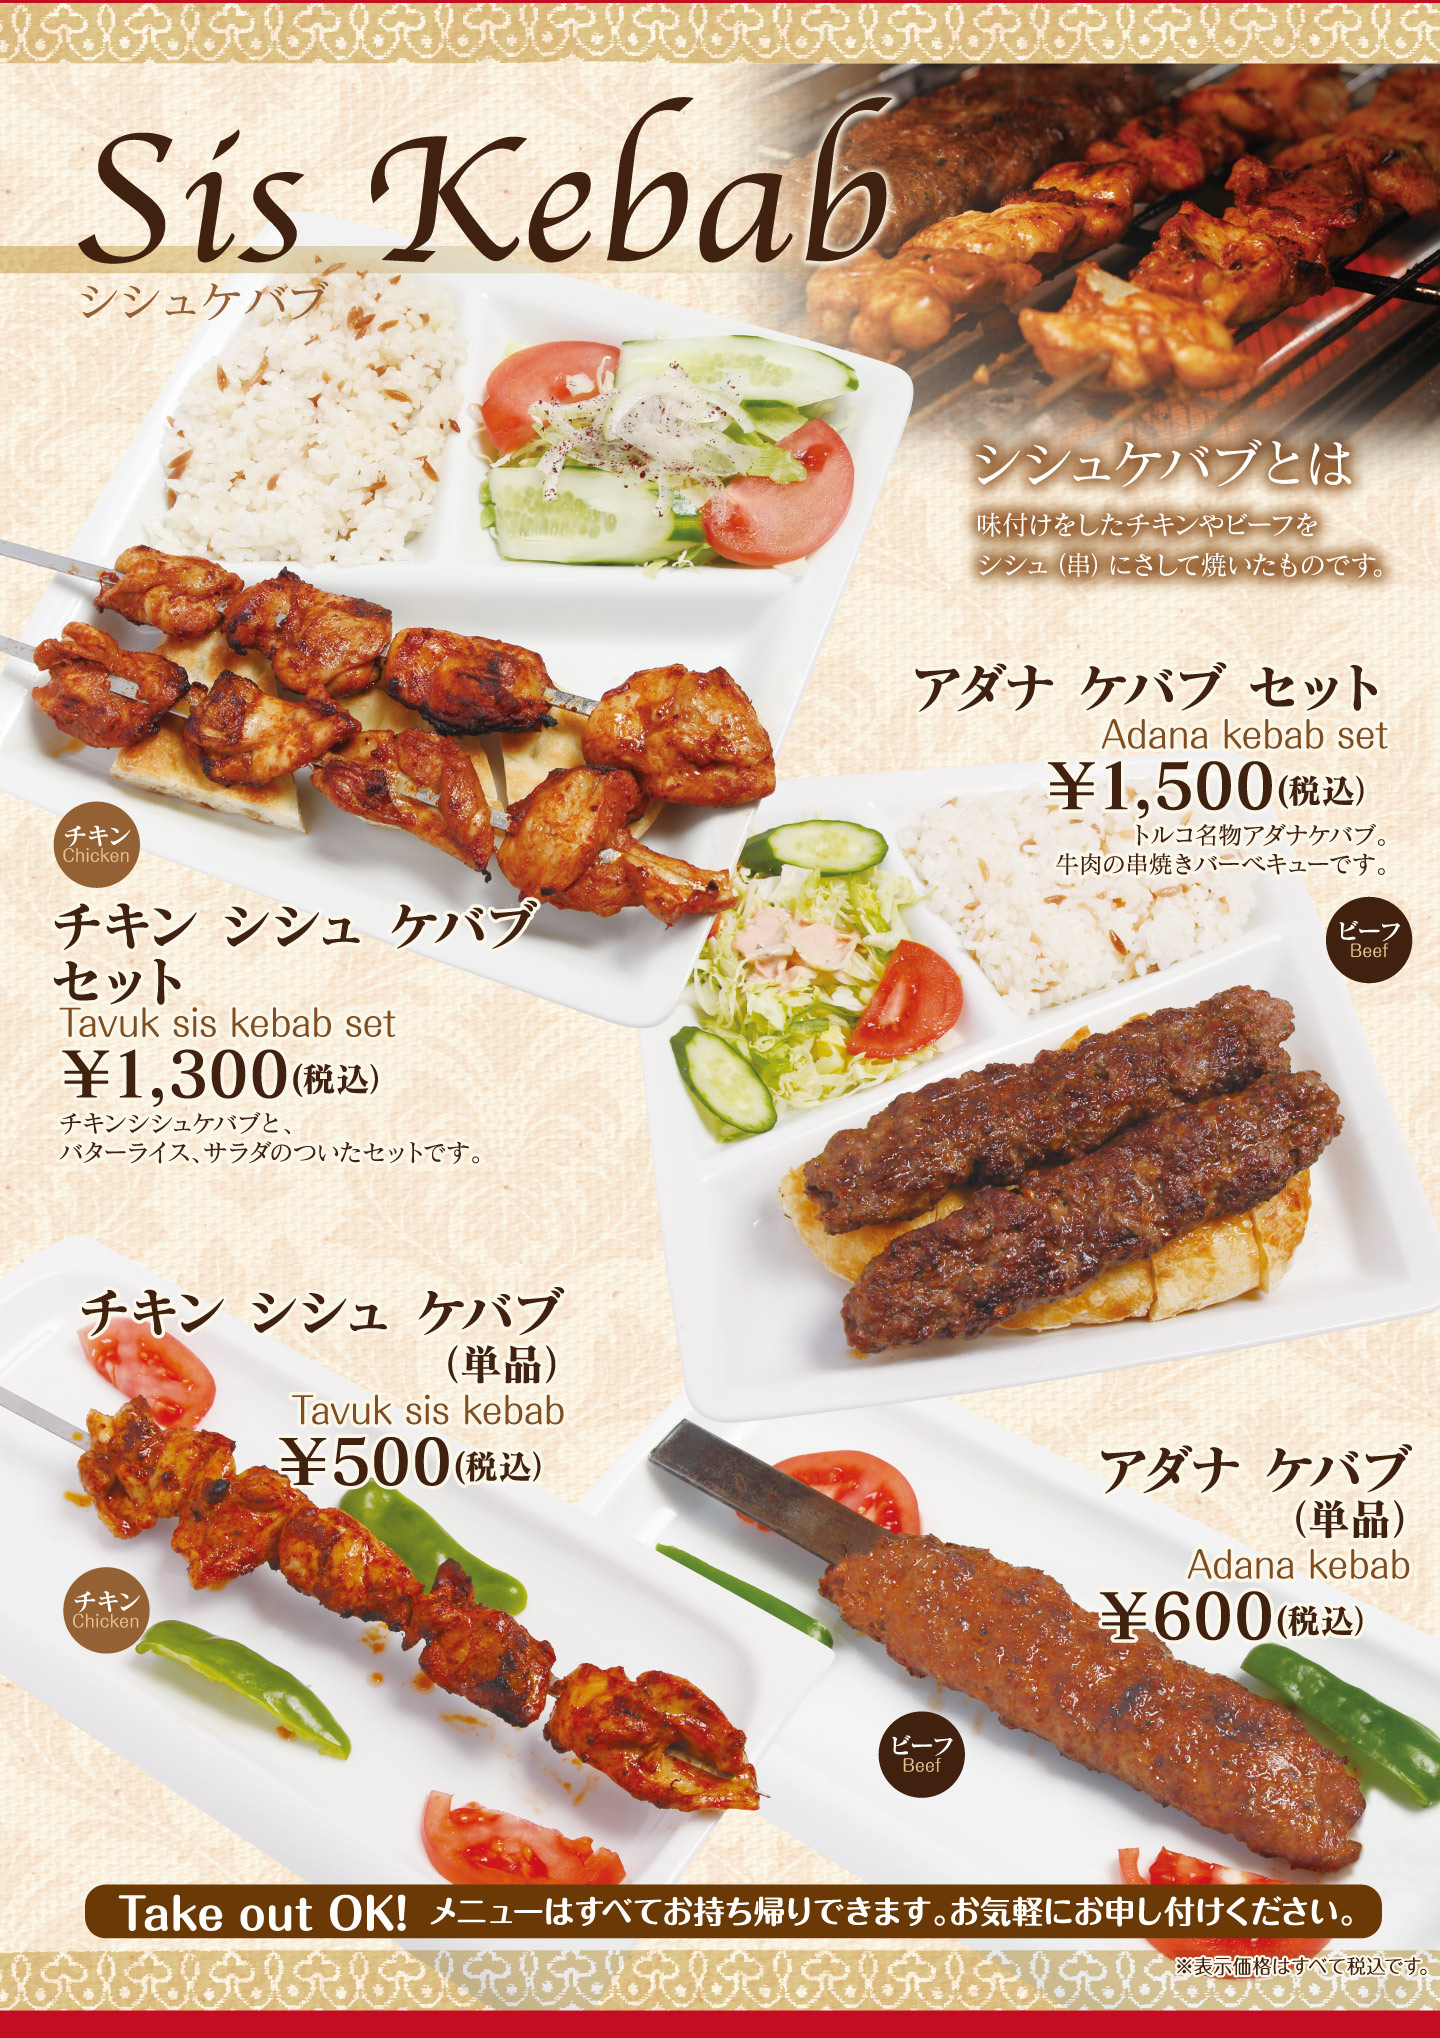 名古屋市中村区「本陣駅」すぐ近くにあるトルコ料理専門店「ターキッシュテイスト(TakishTaste)」のシシュケバブメニューです。串に刺して焼いたケバブのことで、チキンとビーフが選べます。